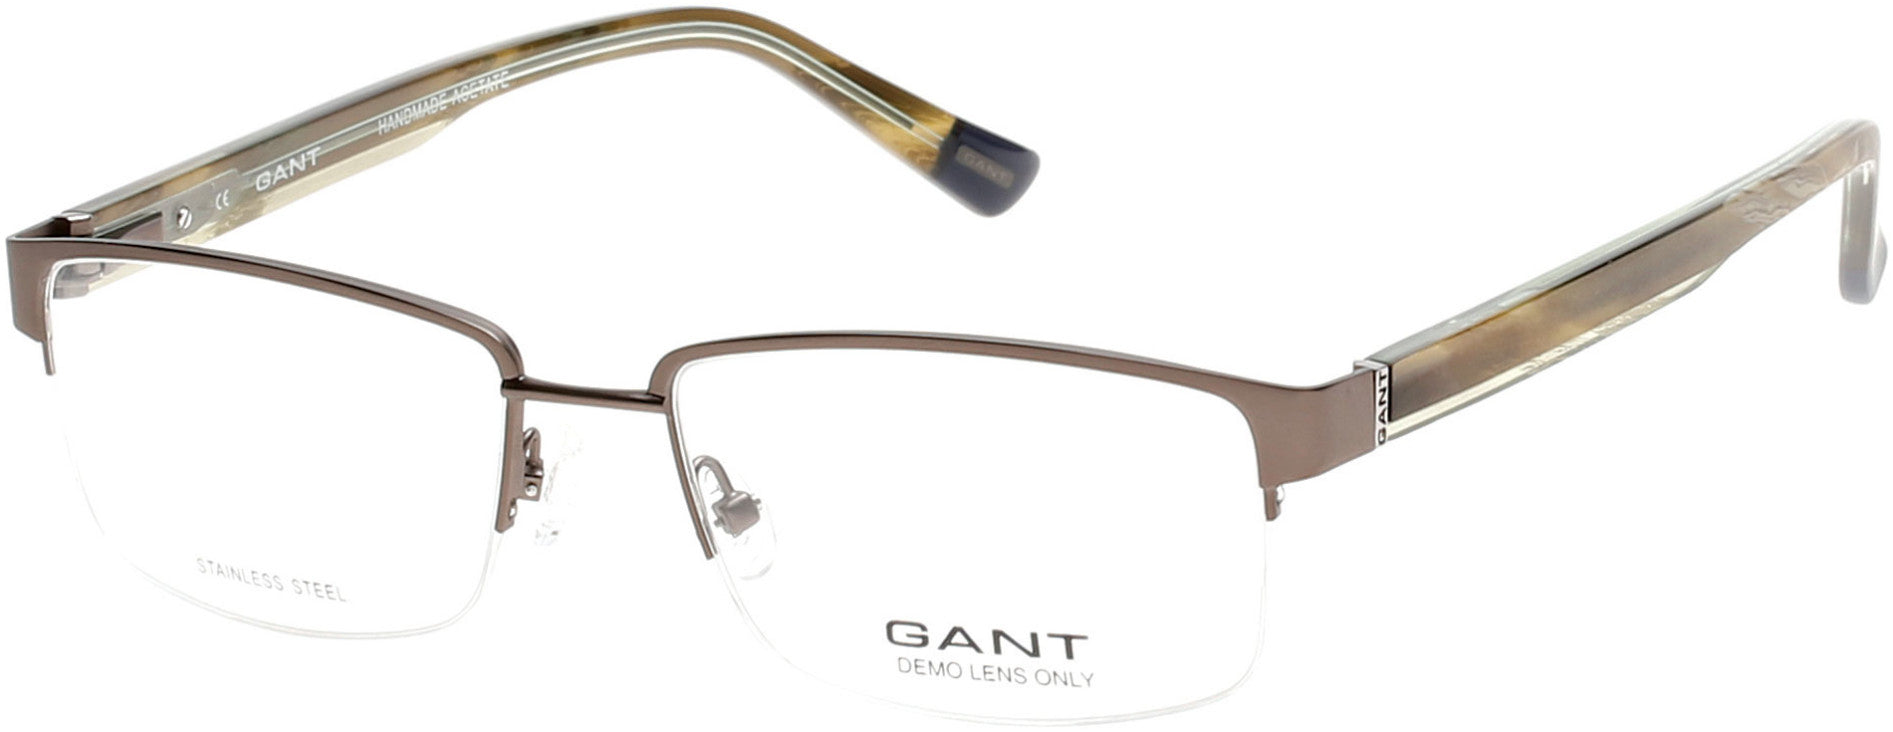 Gant GA3072 Eyeglasses 009-009 - Matte Gunmetal